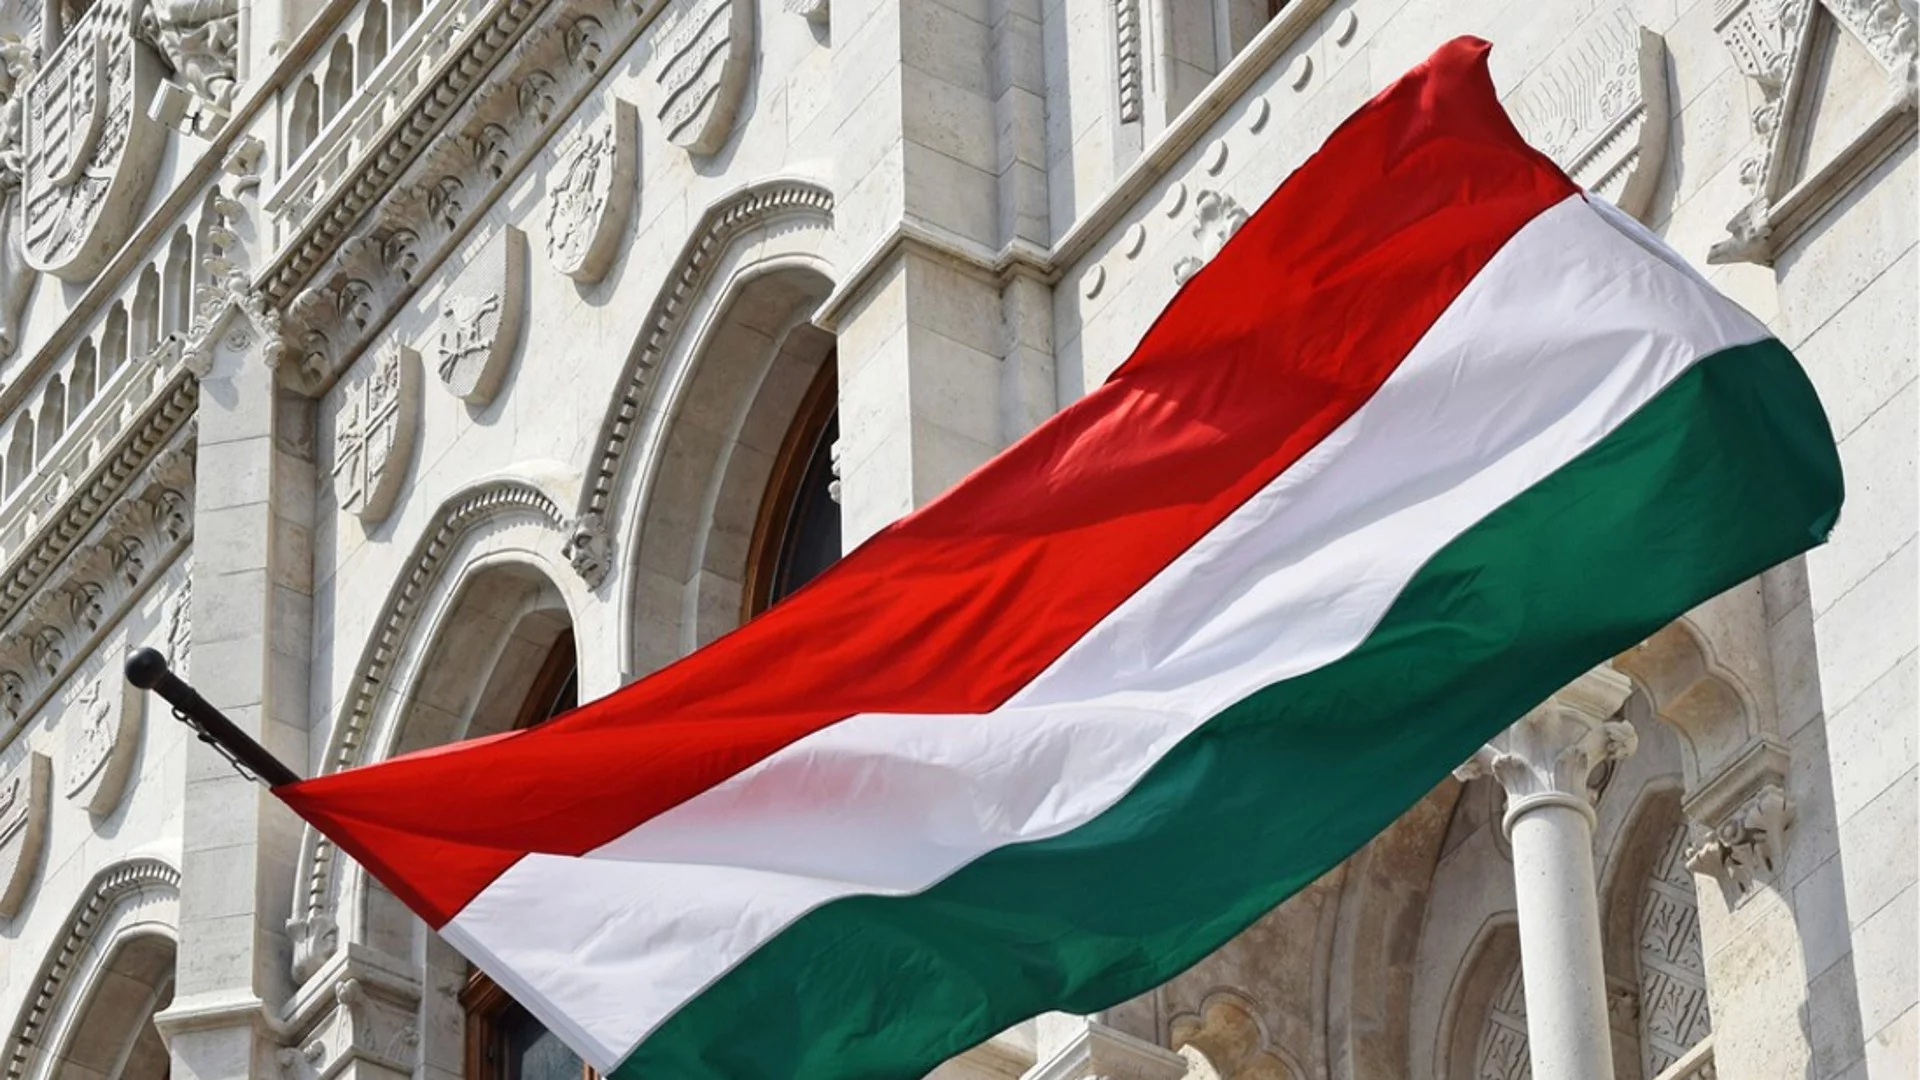 "Да направим Европа отново велика": Унгария копира лозунга на Тръмп за председателството на ЕС